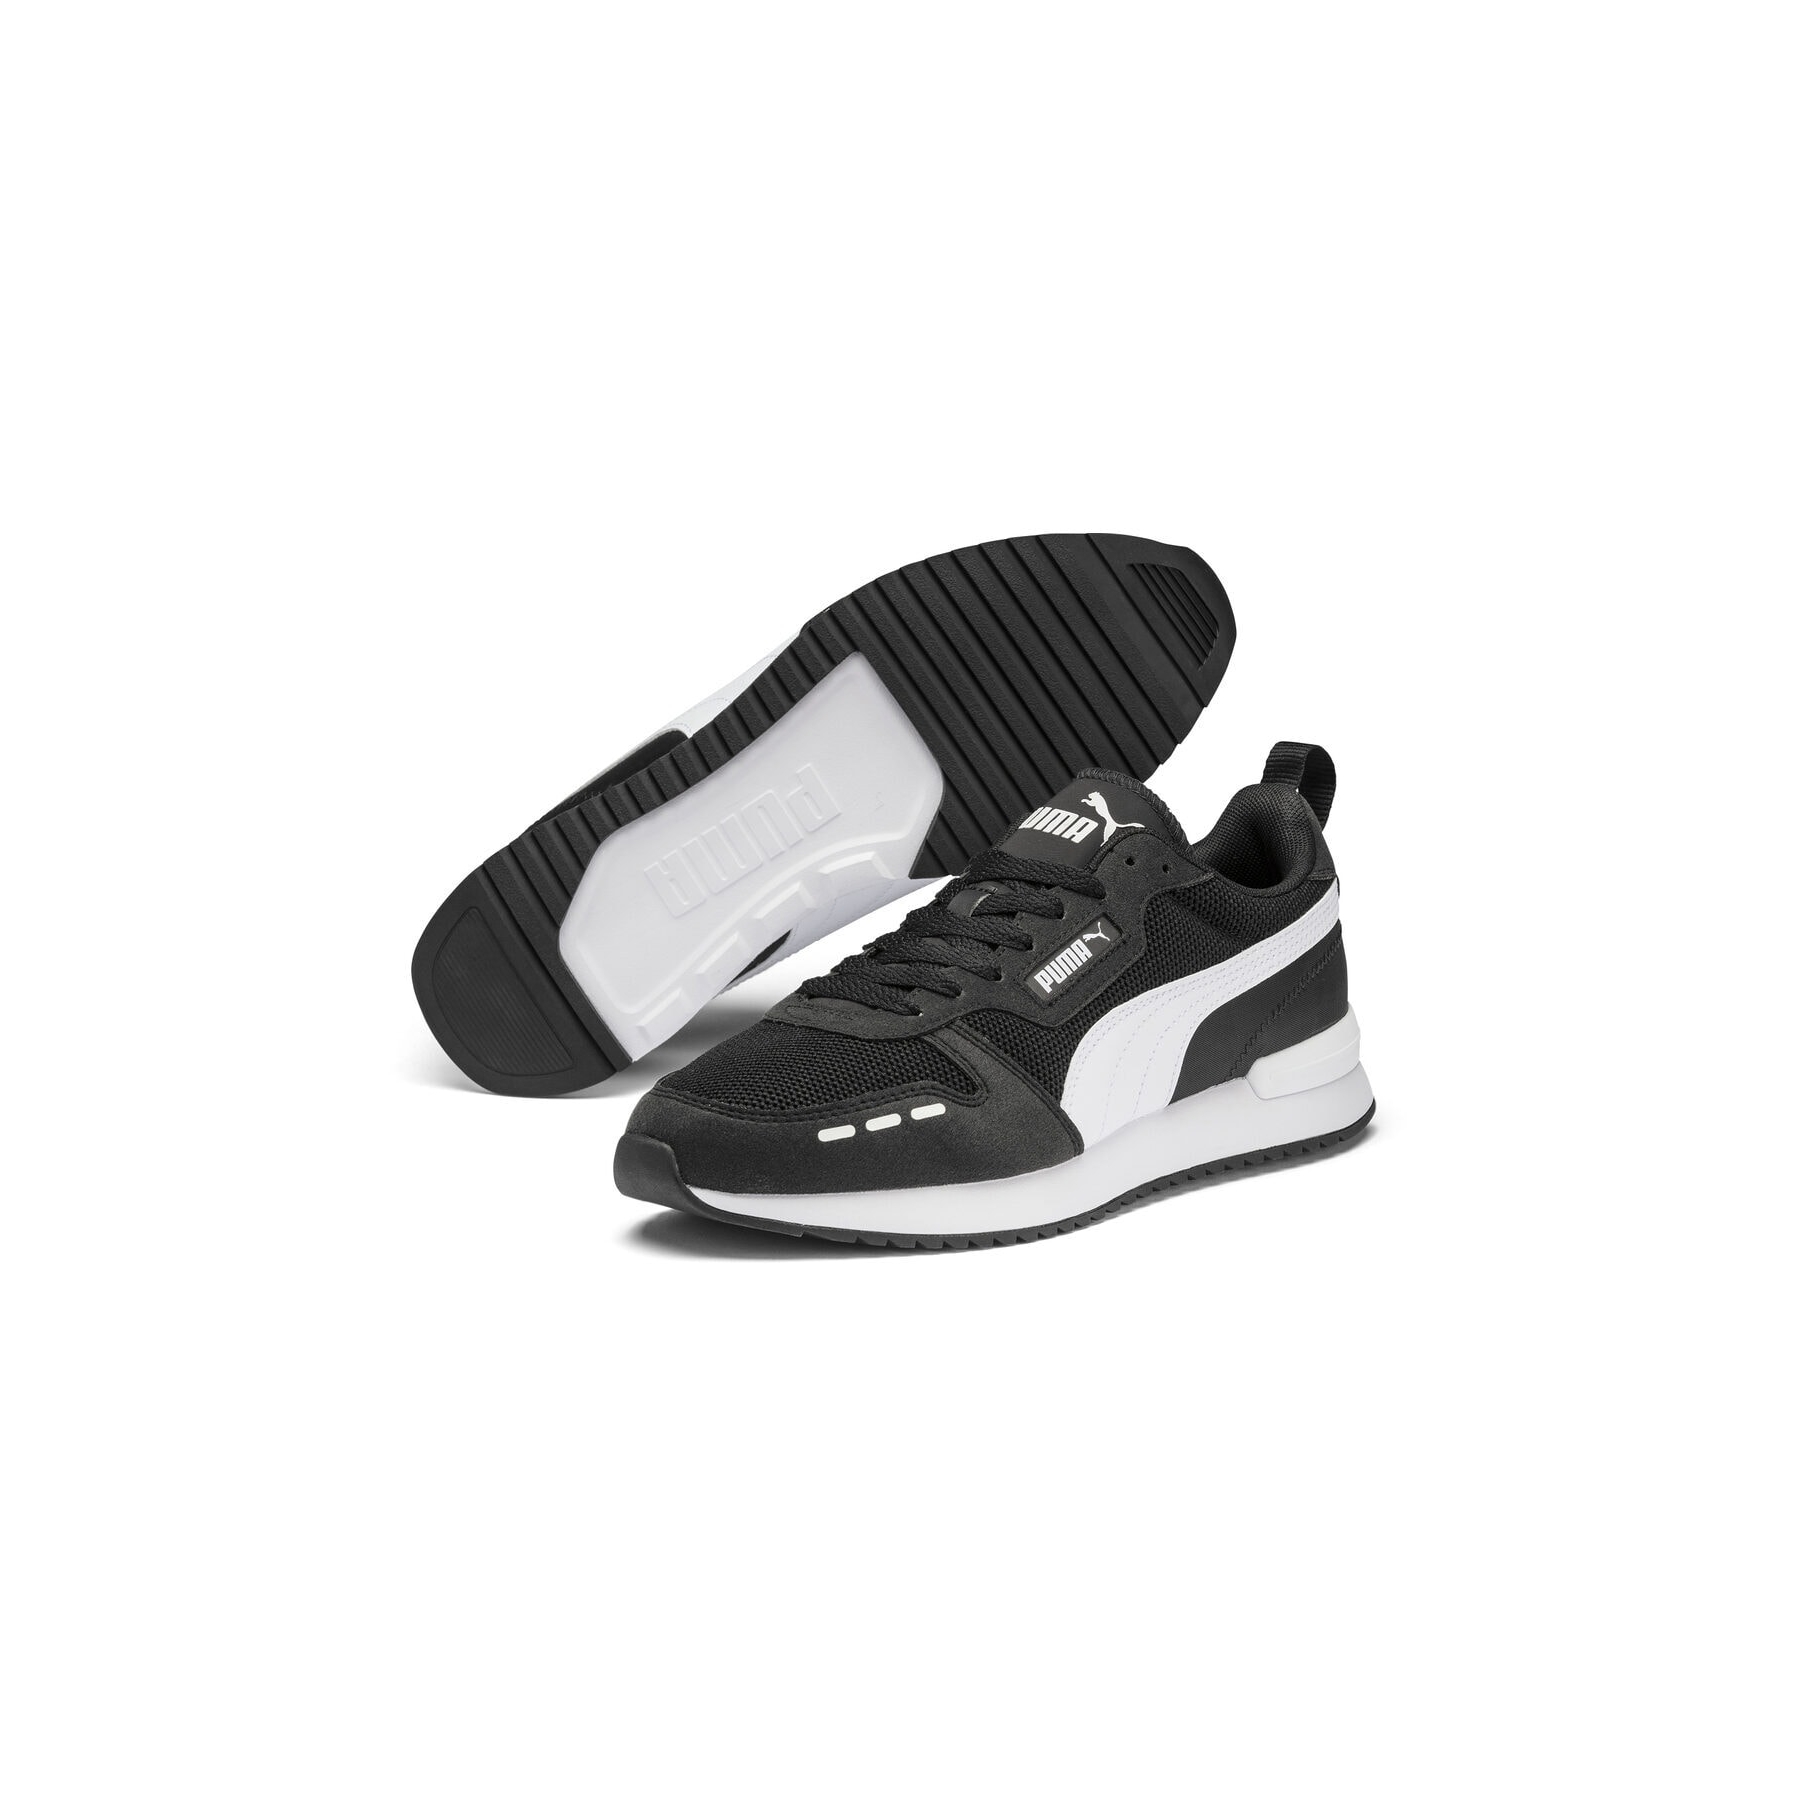 Puma Erkek Siyah Spor Ayakkabı (373117-01)